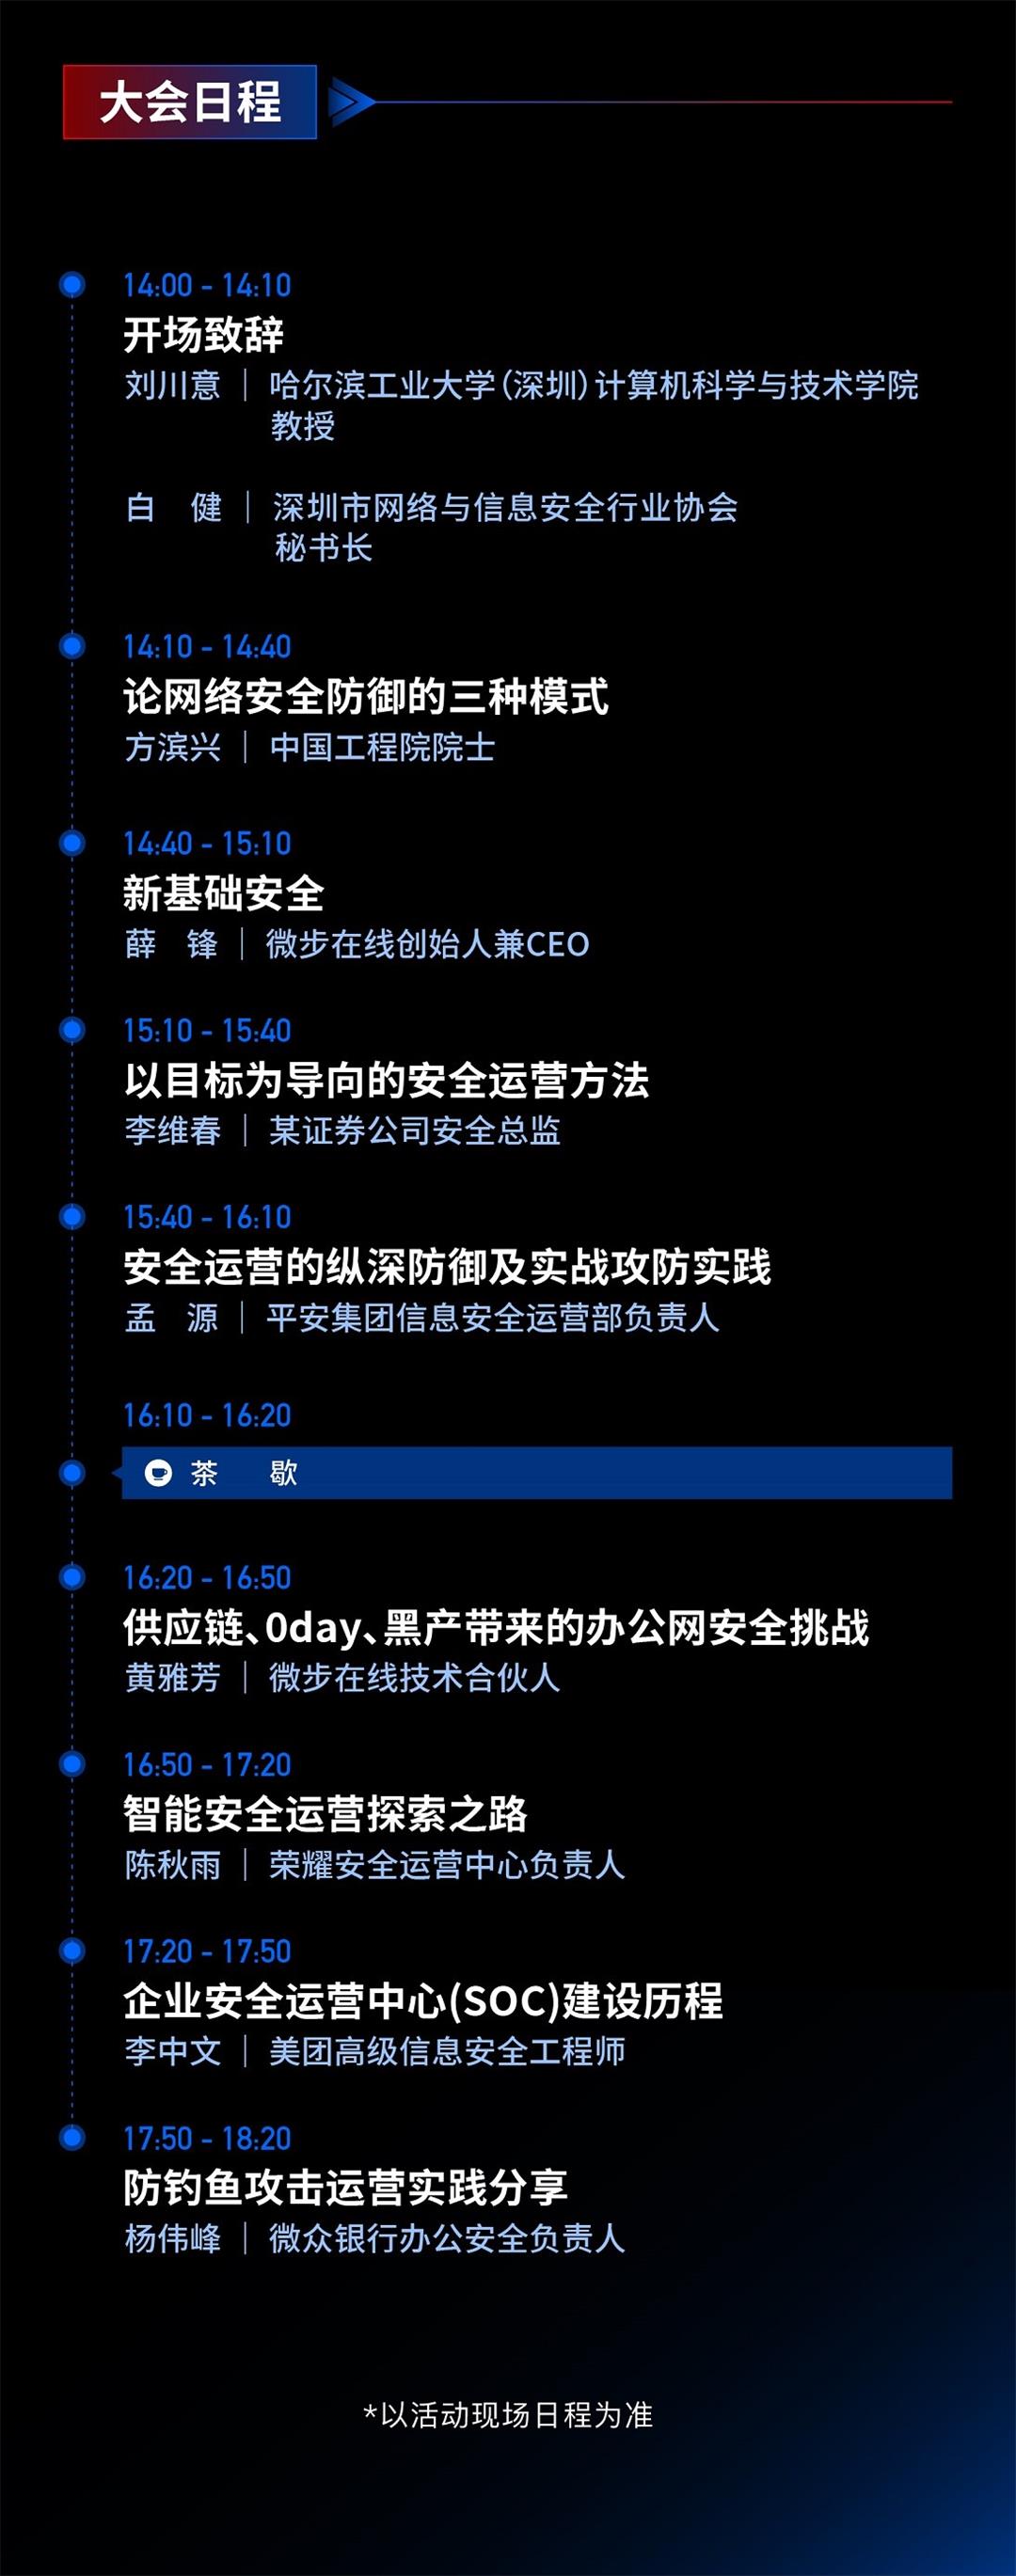 CSOP 深圳站 活动行-3-0514.jpg